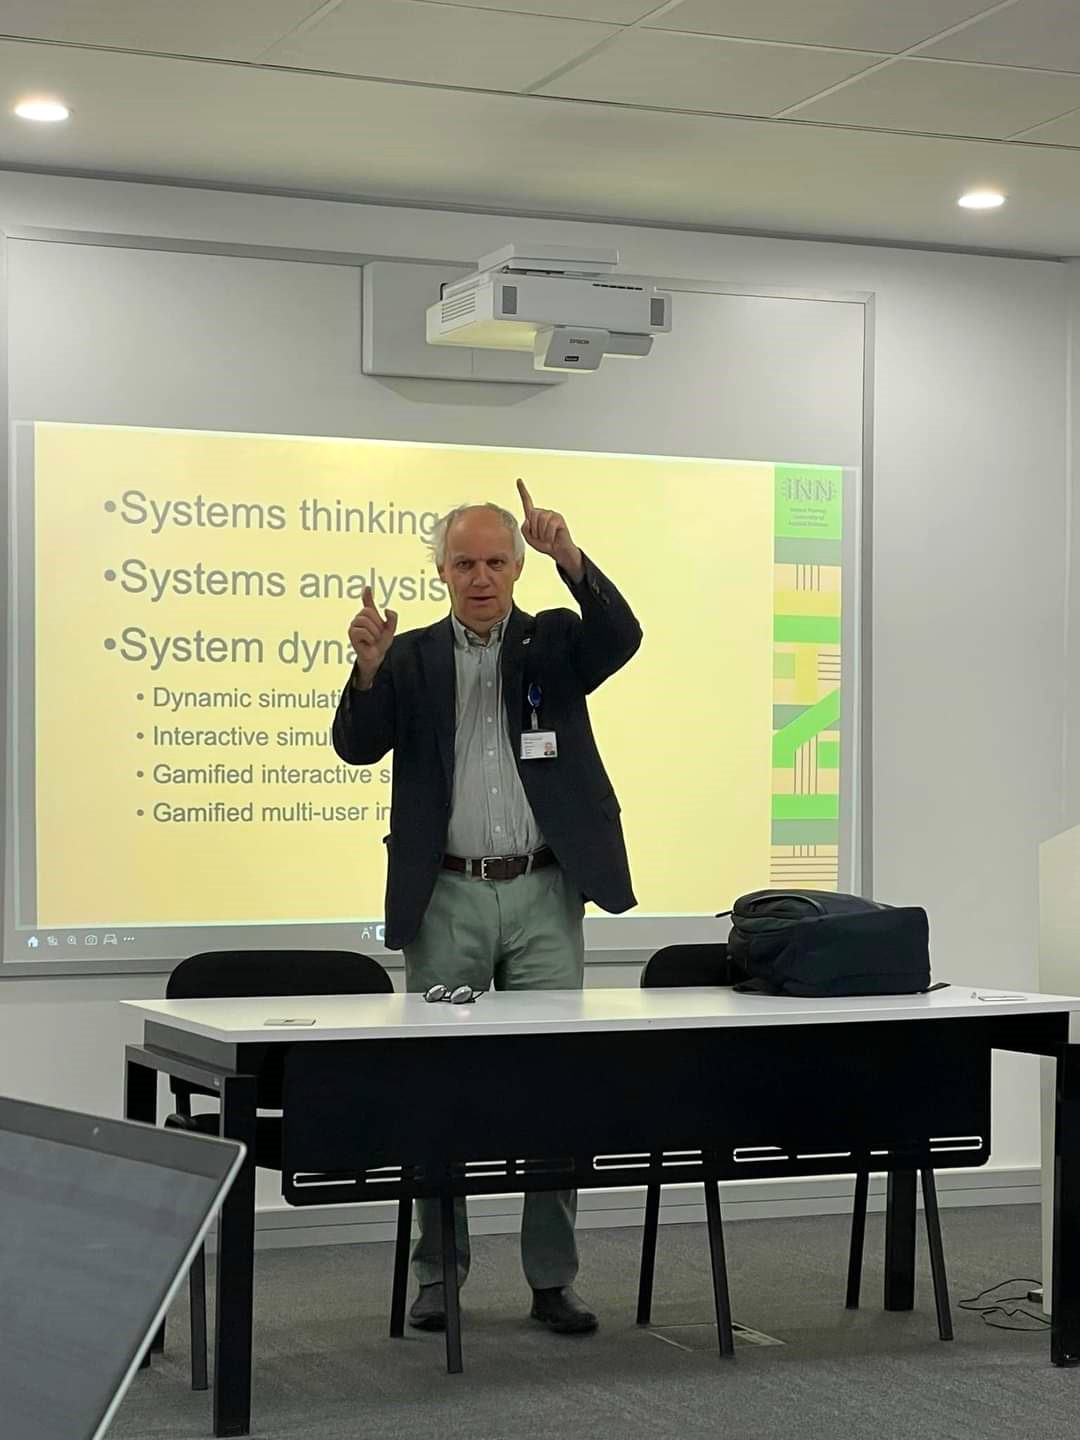 Professor Harald Sverdrup står bak et bord og gestikulerer, foran en storskjerm med med punktvis tekst om System thinking